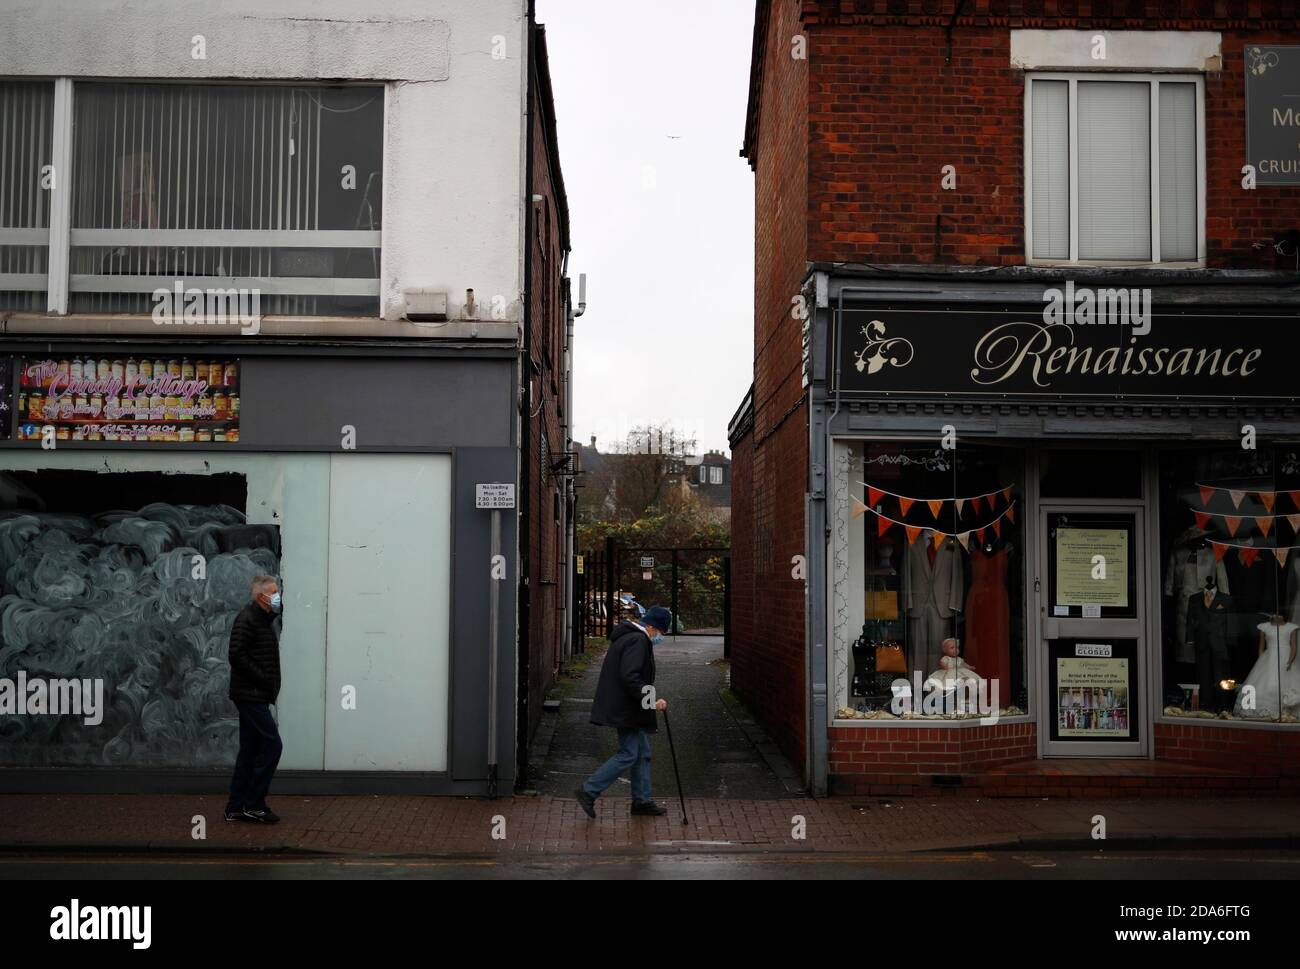 Coalville, Leicestershire, Großbritannien. November 2020. Männer laufen an einer leeren Einzelhandelseinheit vorbei, nachdem die Arbeitslosenquote in Großbritannien gestiegen ist, da das Coronavirus weiterhin auf dem Arbeitsmarkt auftritt. Credit Darren Staples/Alamy Live News. Stockfoto